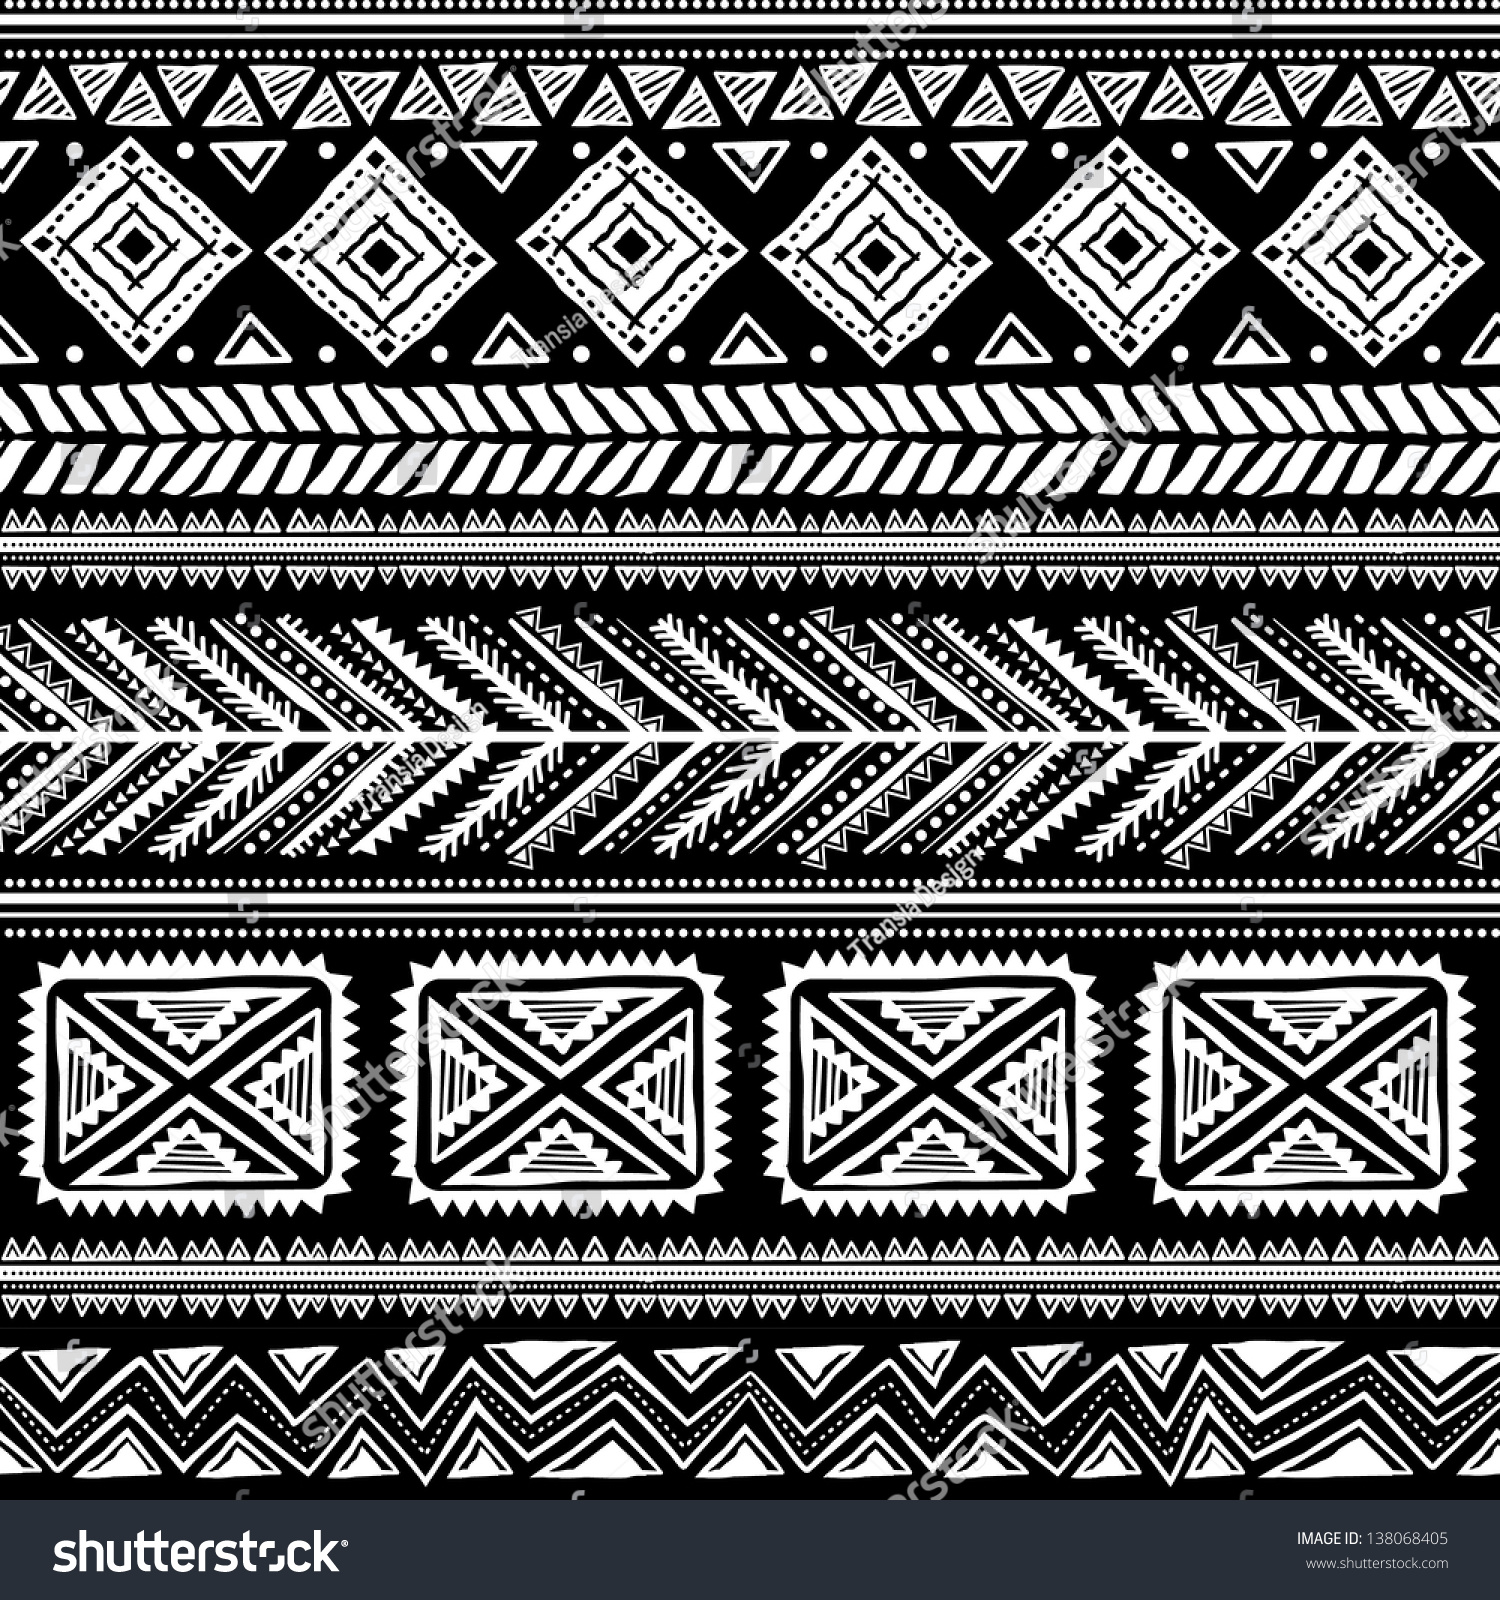 Tribal Ethnic Seamless Stock Vector Illustration 138068405 : Shutterstock